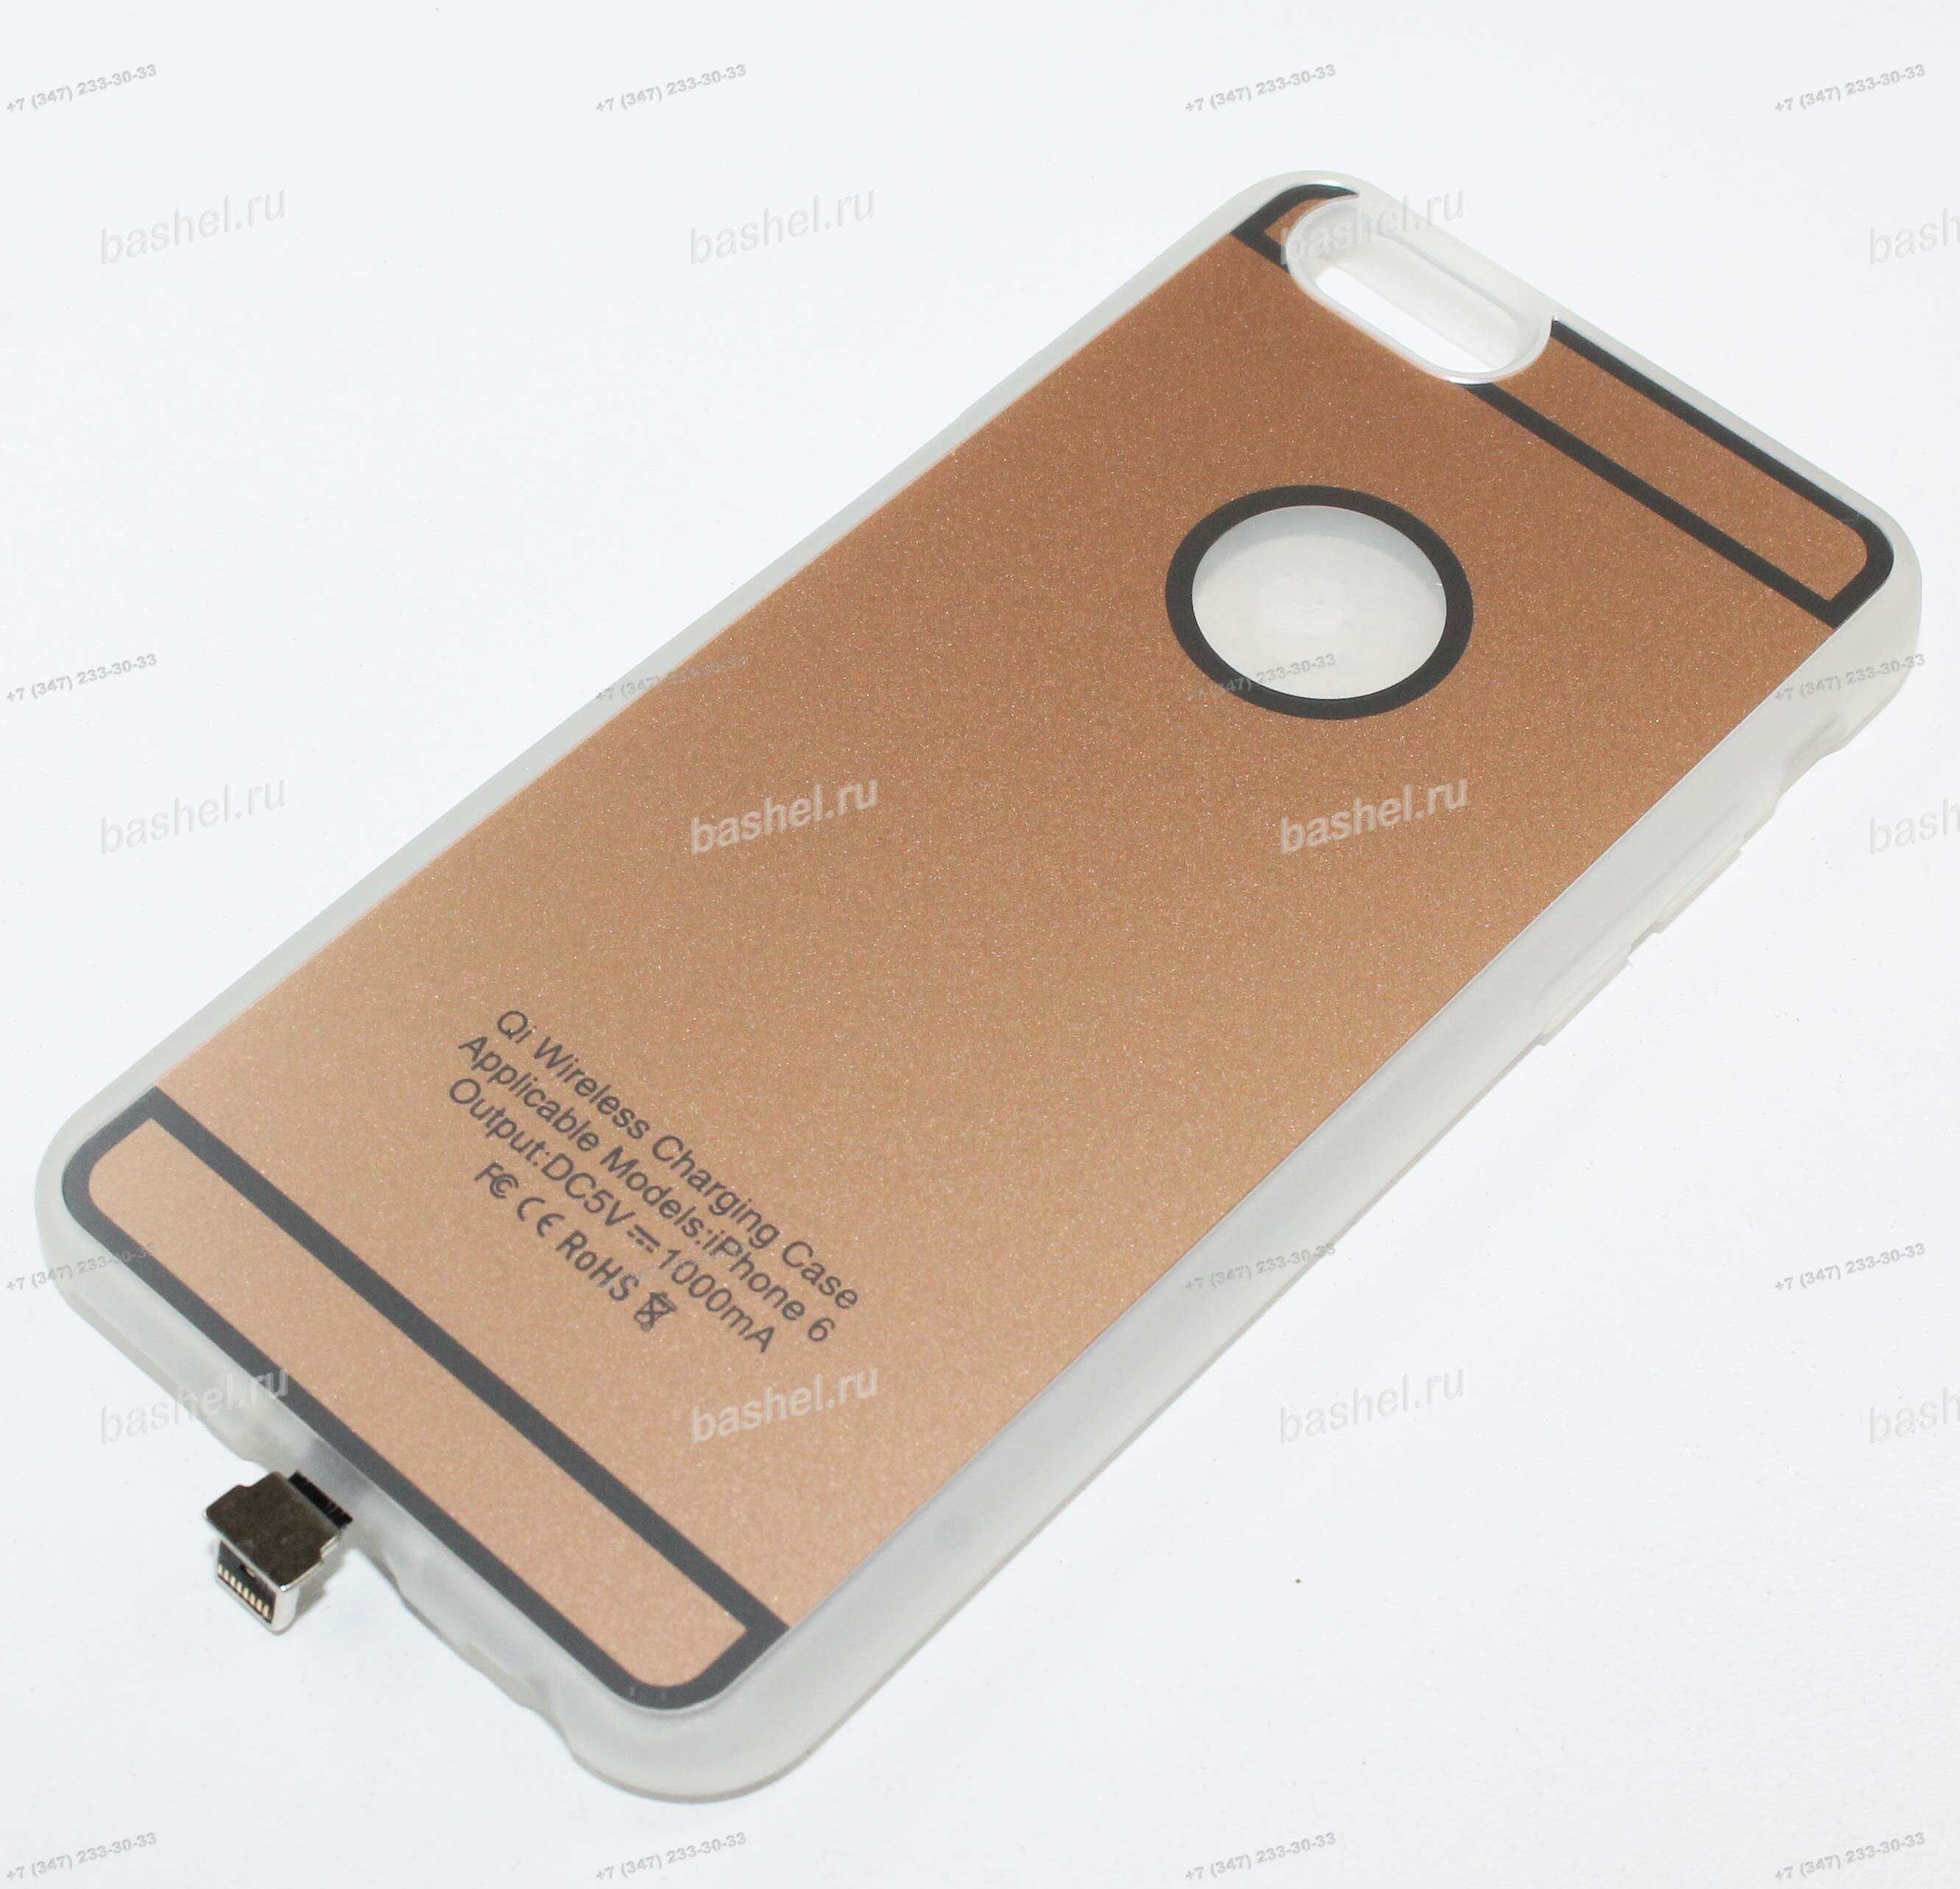 Чехол-адаптер для беспроводной зарядки Qi Apple iPhone 6 золото 5,5"